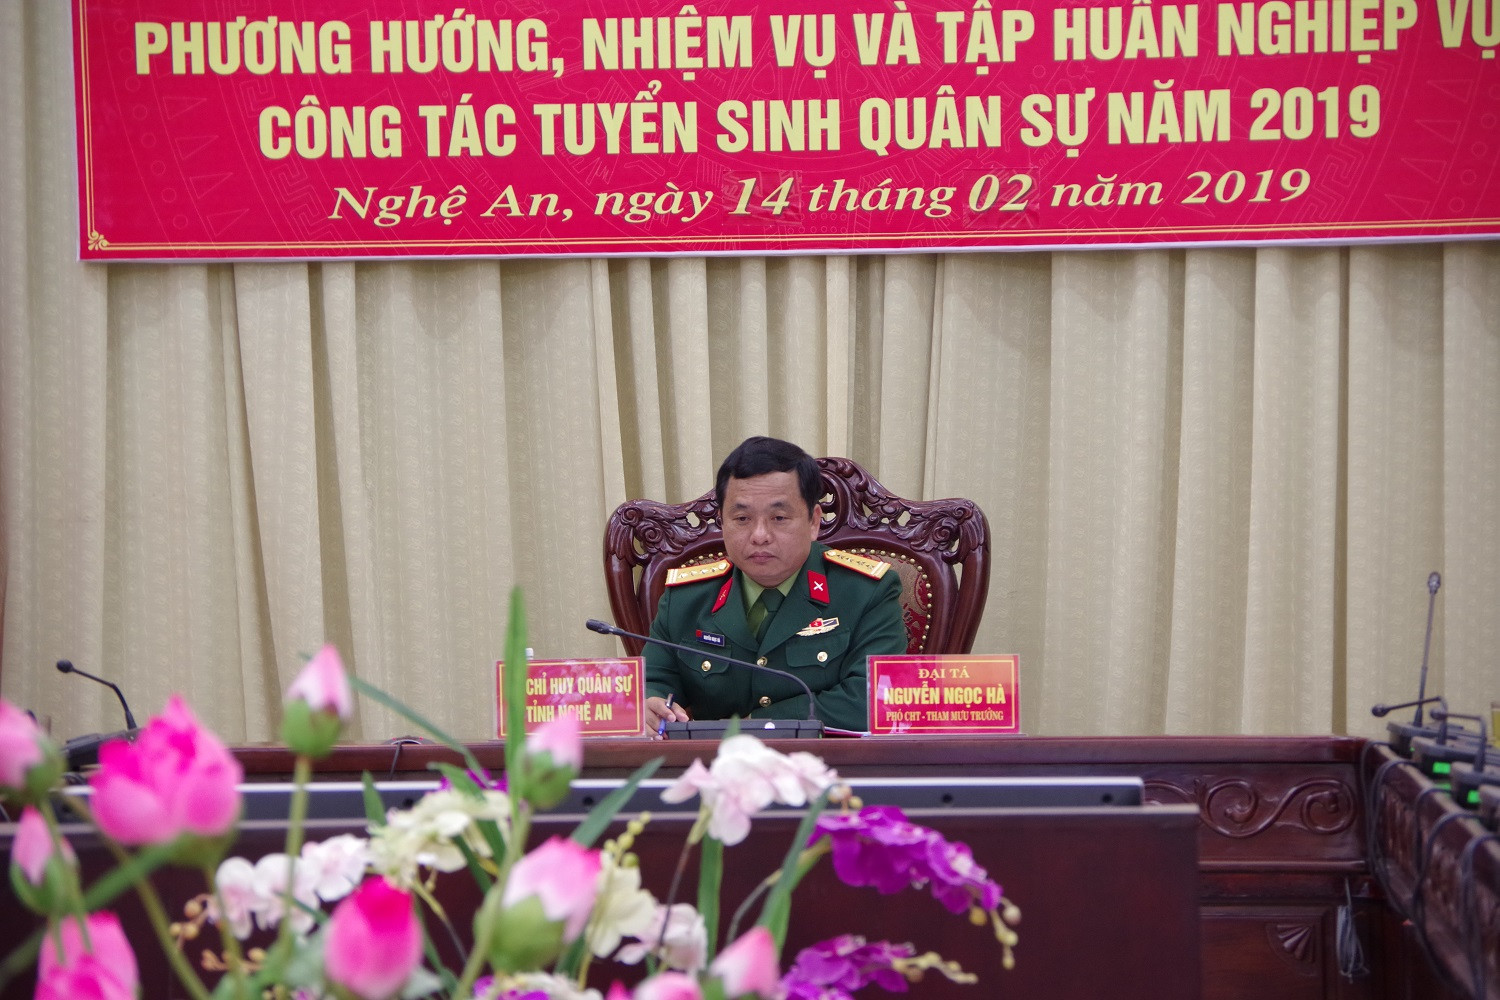 Đại tá Nguyễn Ngọc Hà, Phó Chỉ huy trưởng - Tham mưu trưởng Bộ CHQS tỉnh chủ trì tại điểm cầu tỉnh Nghệ An (Trần Dũng)